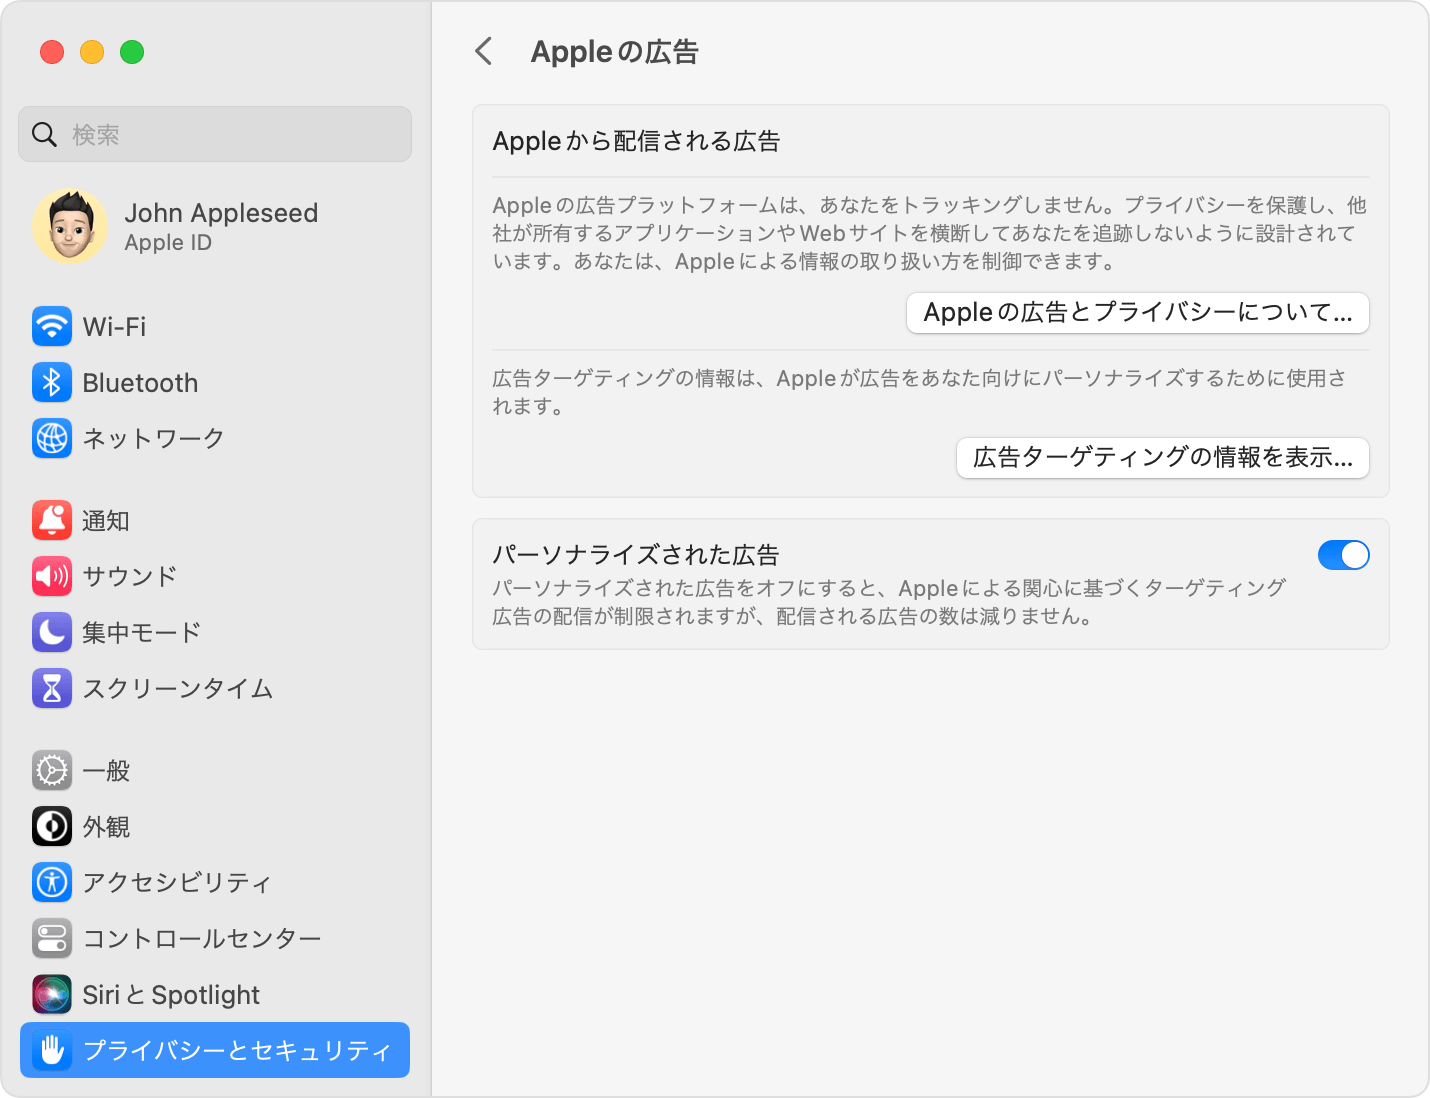 App Store、Apple News、株価で配信されるパーソナライズされた広告を制限する - Apple サポート (日本)